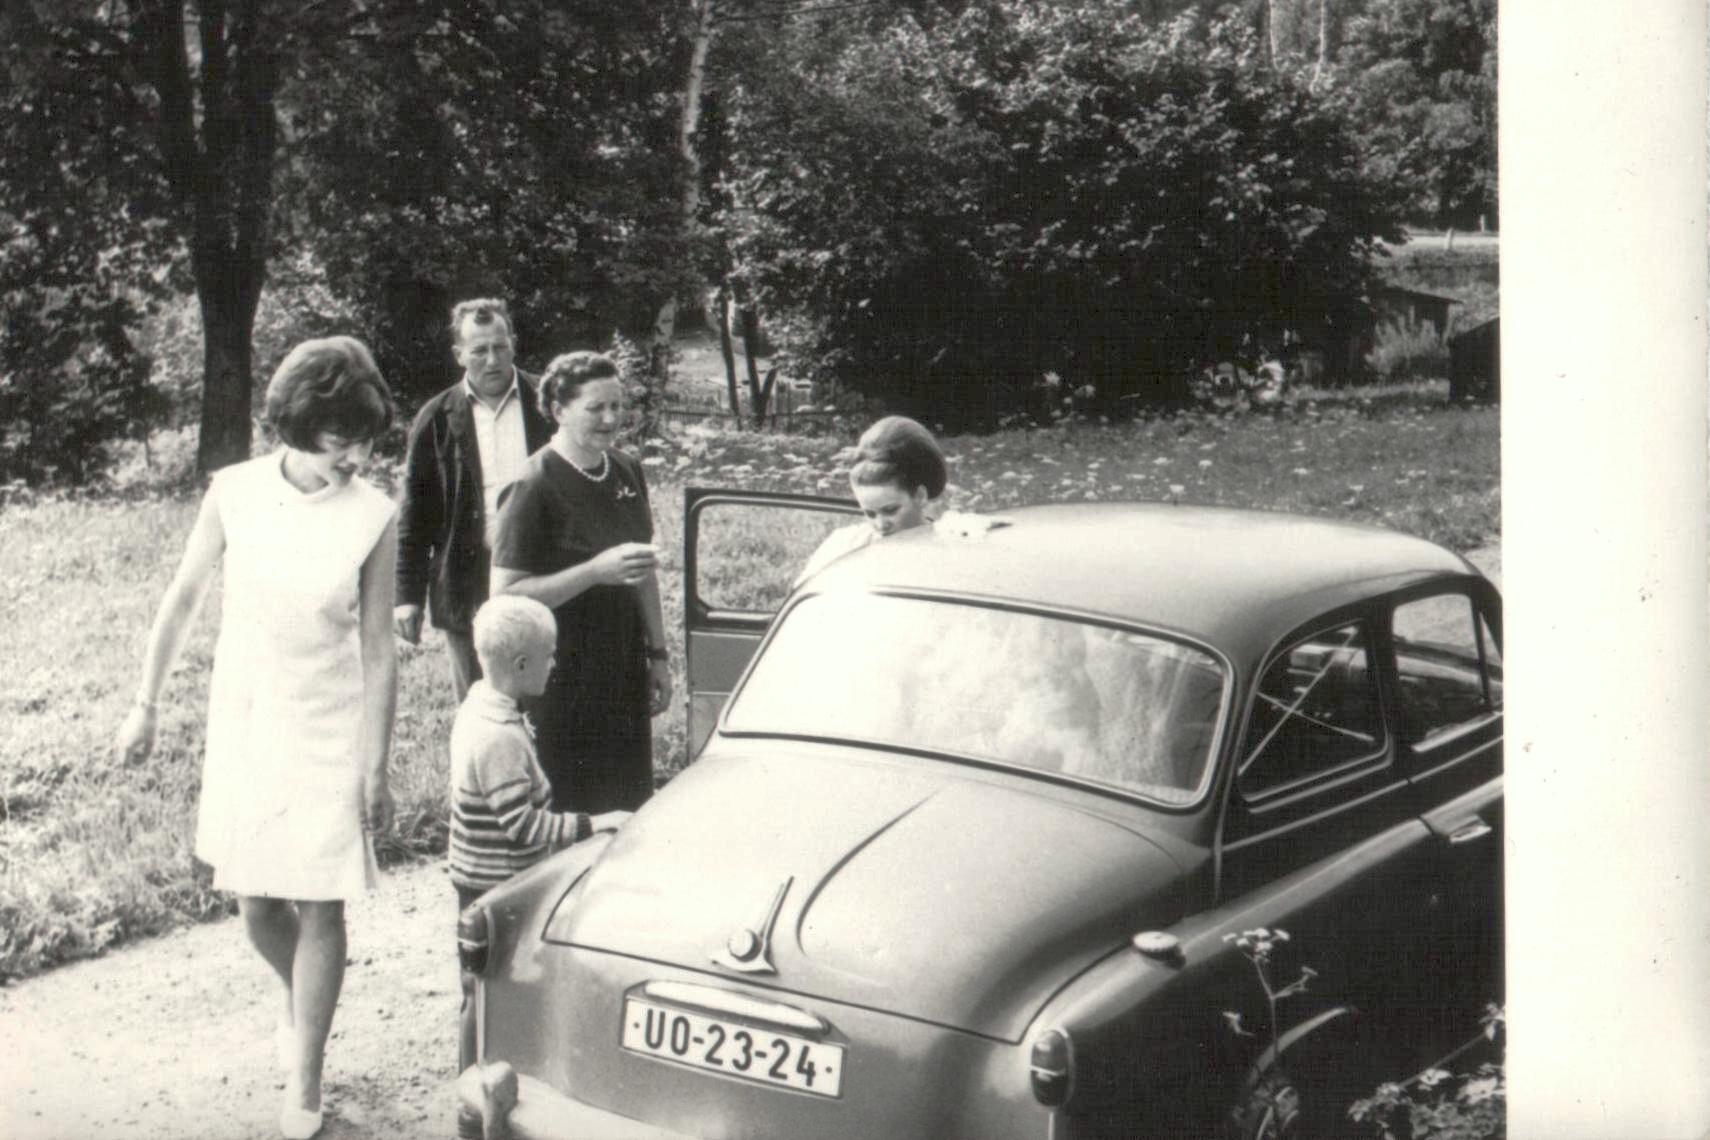 1968_ svatba Eva Cerenova-Janigova, Jana Tejklova, Hainz Pohl